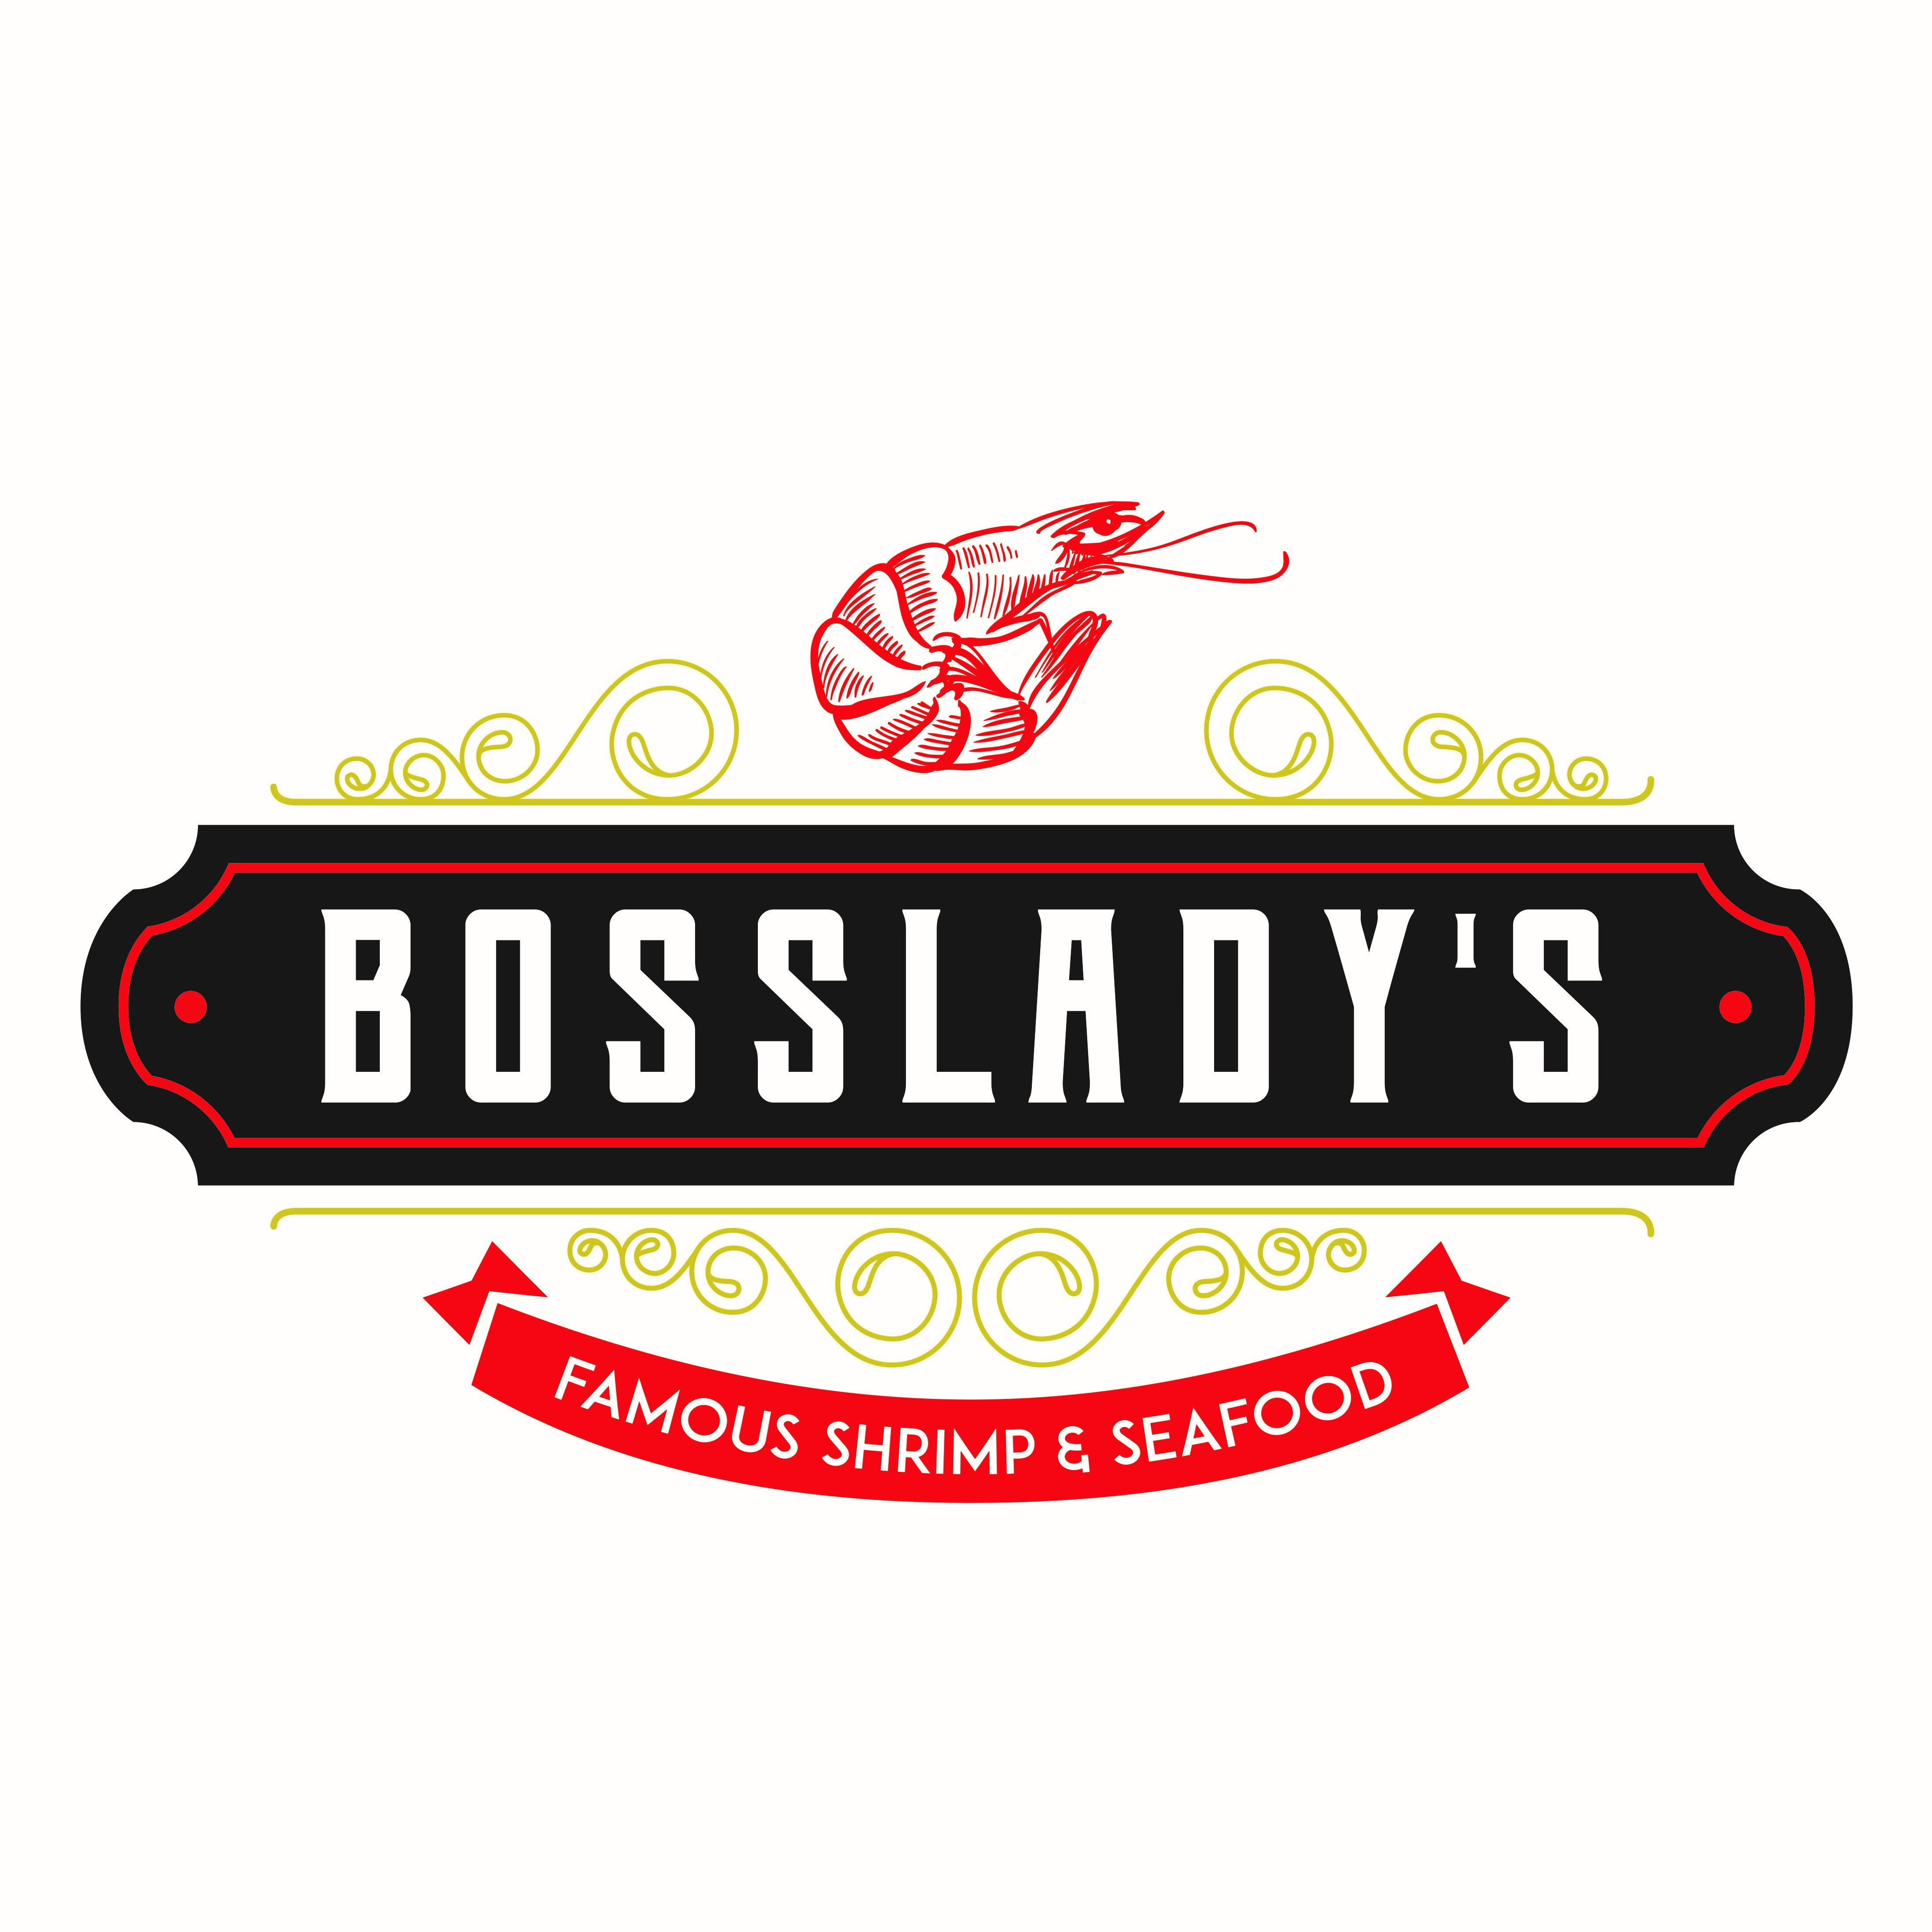 Bossladys Famous Shrimp